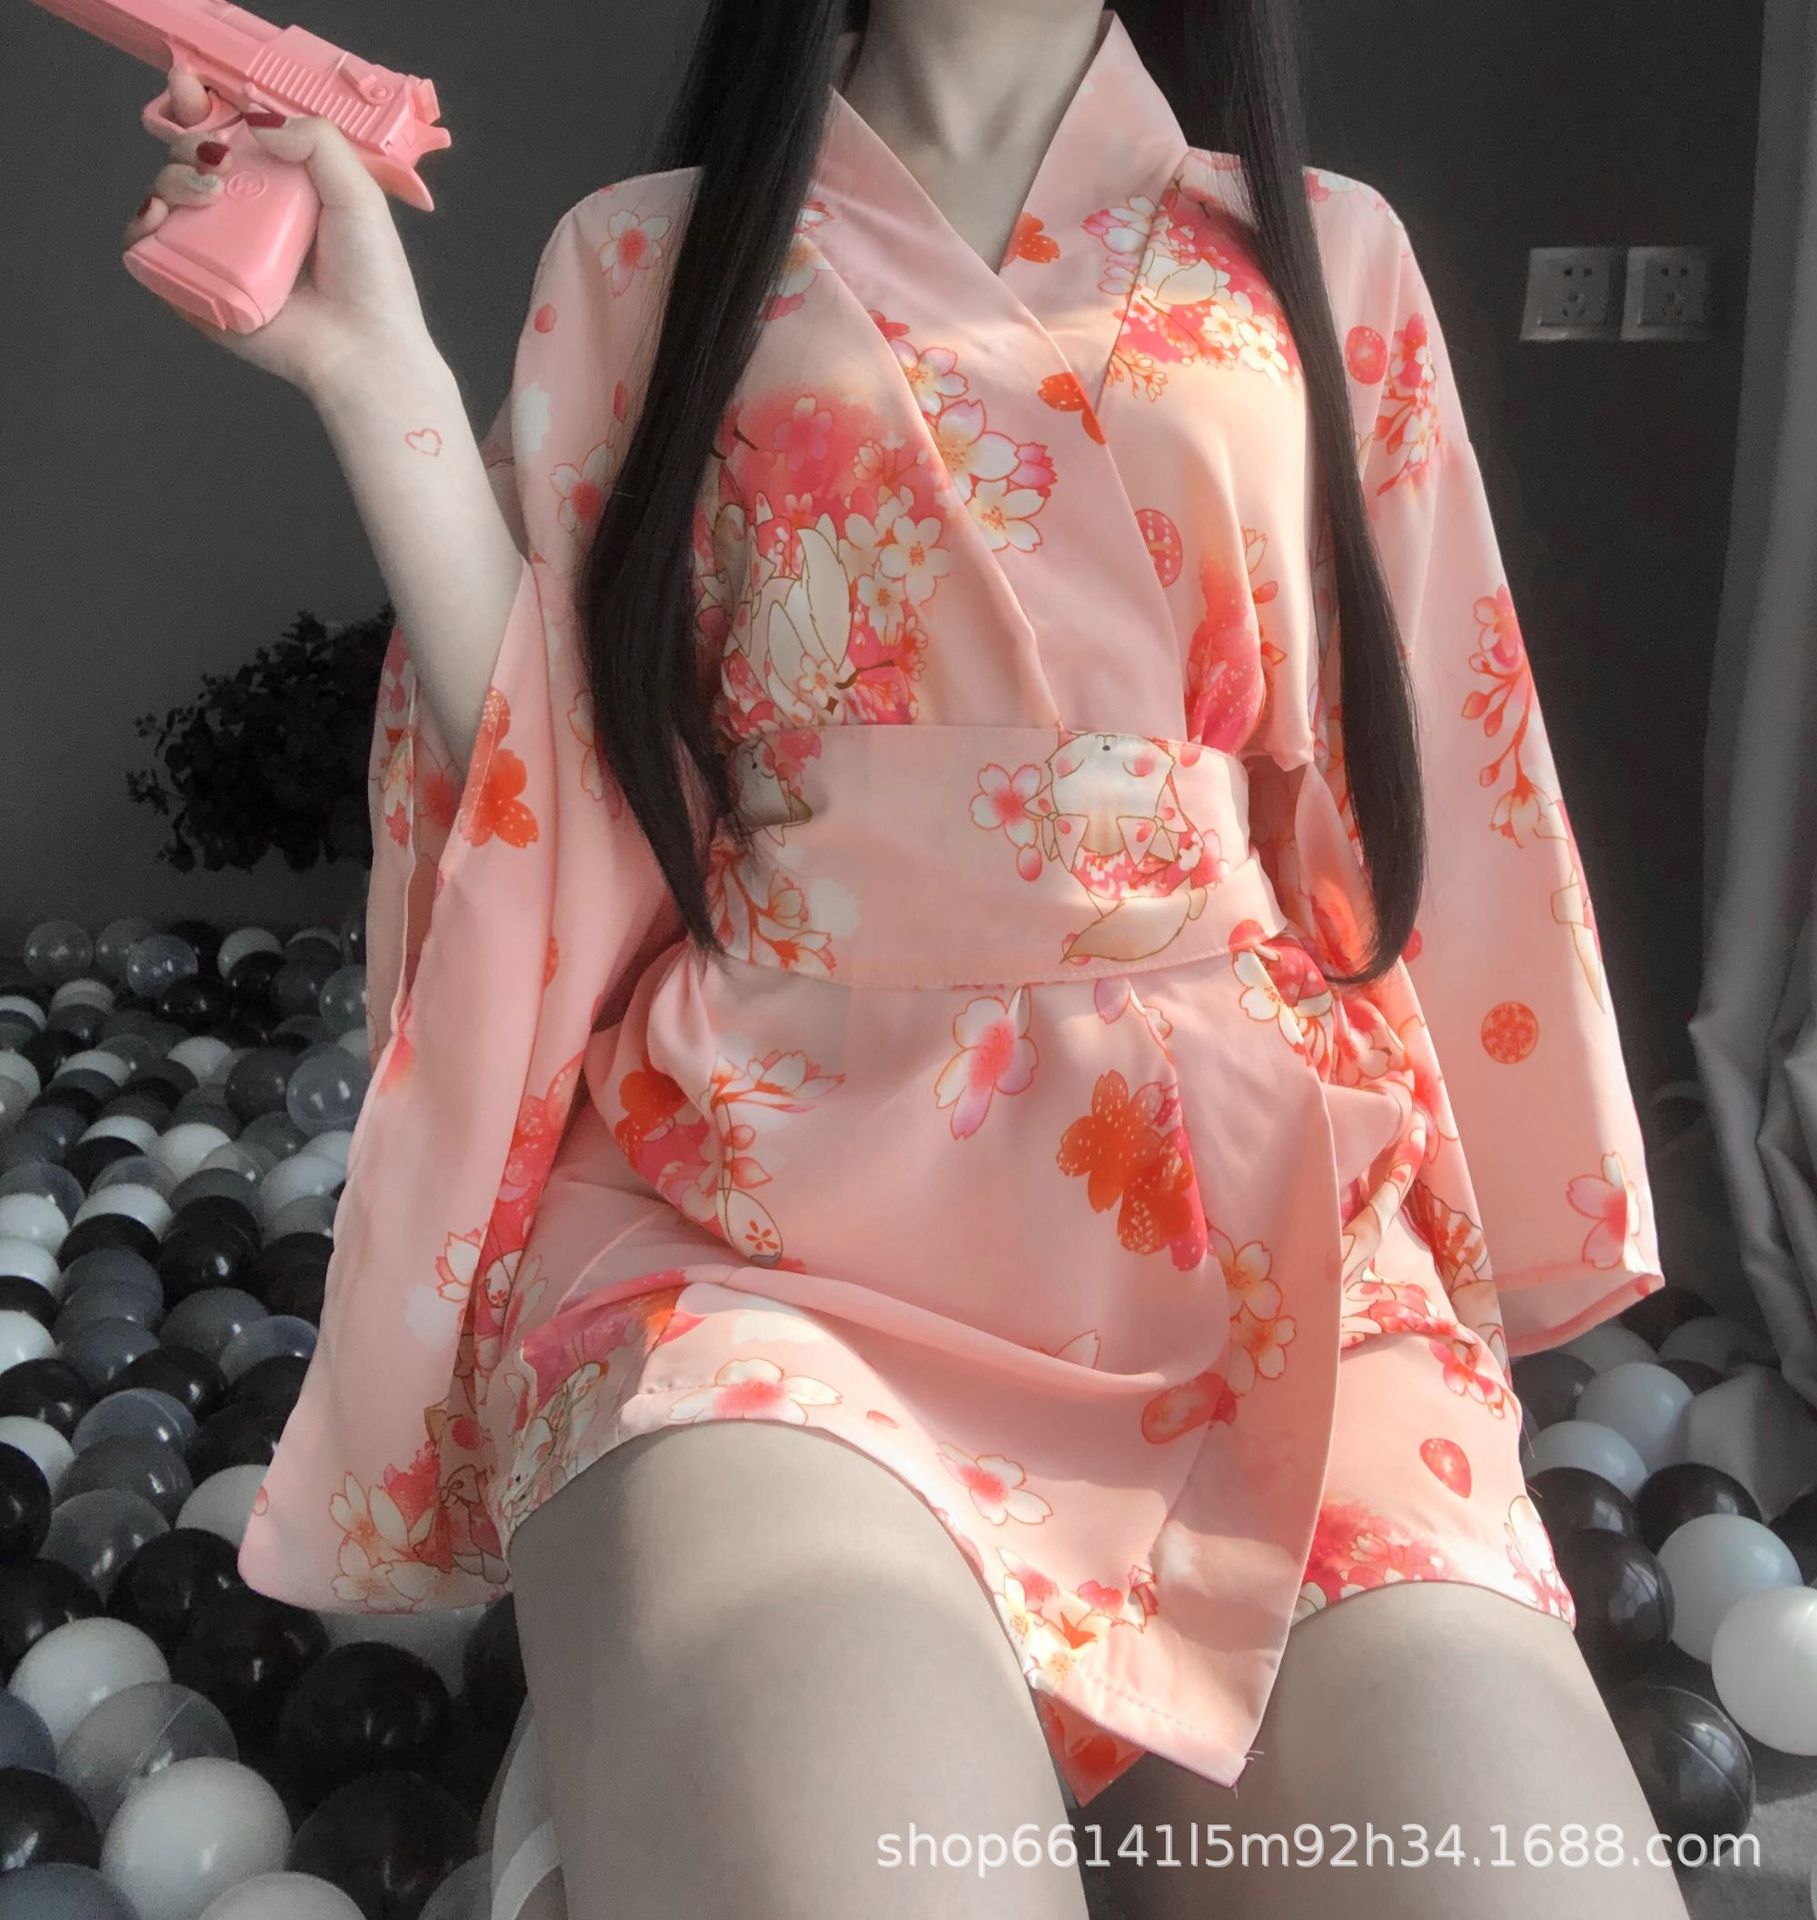 新款激情情趣内衣女 日式复古印花性感诱惑和服套装浴袍2347